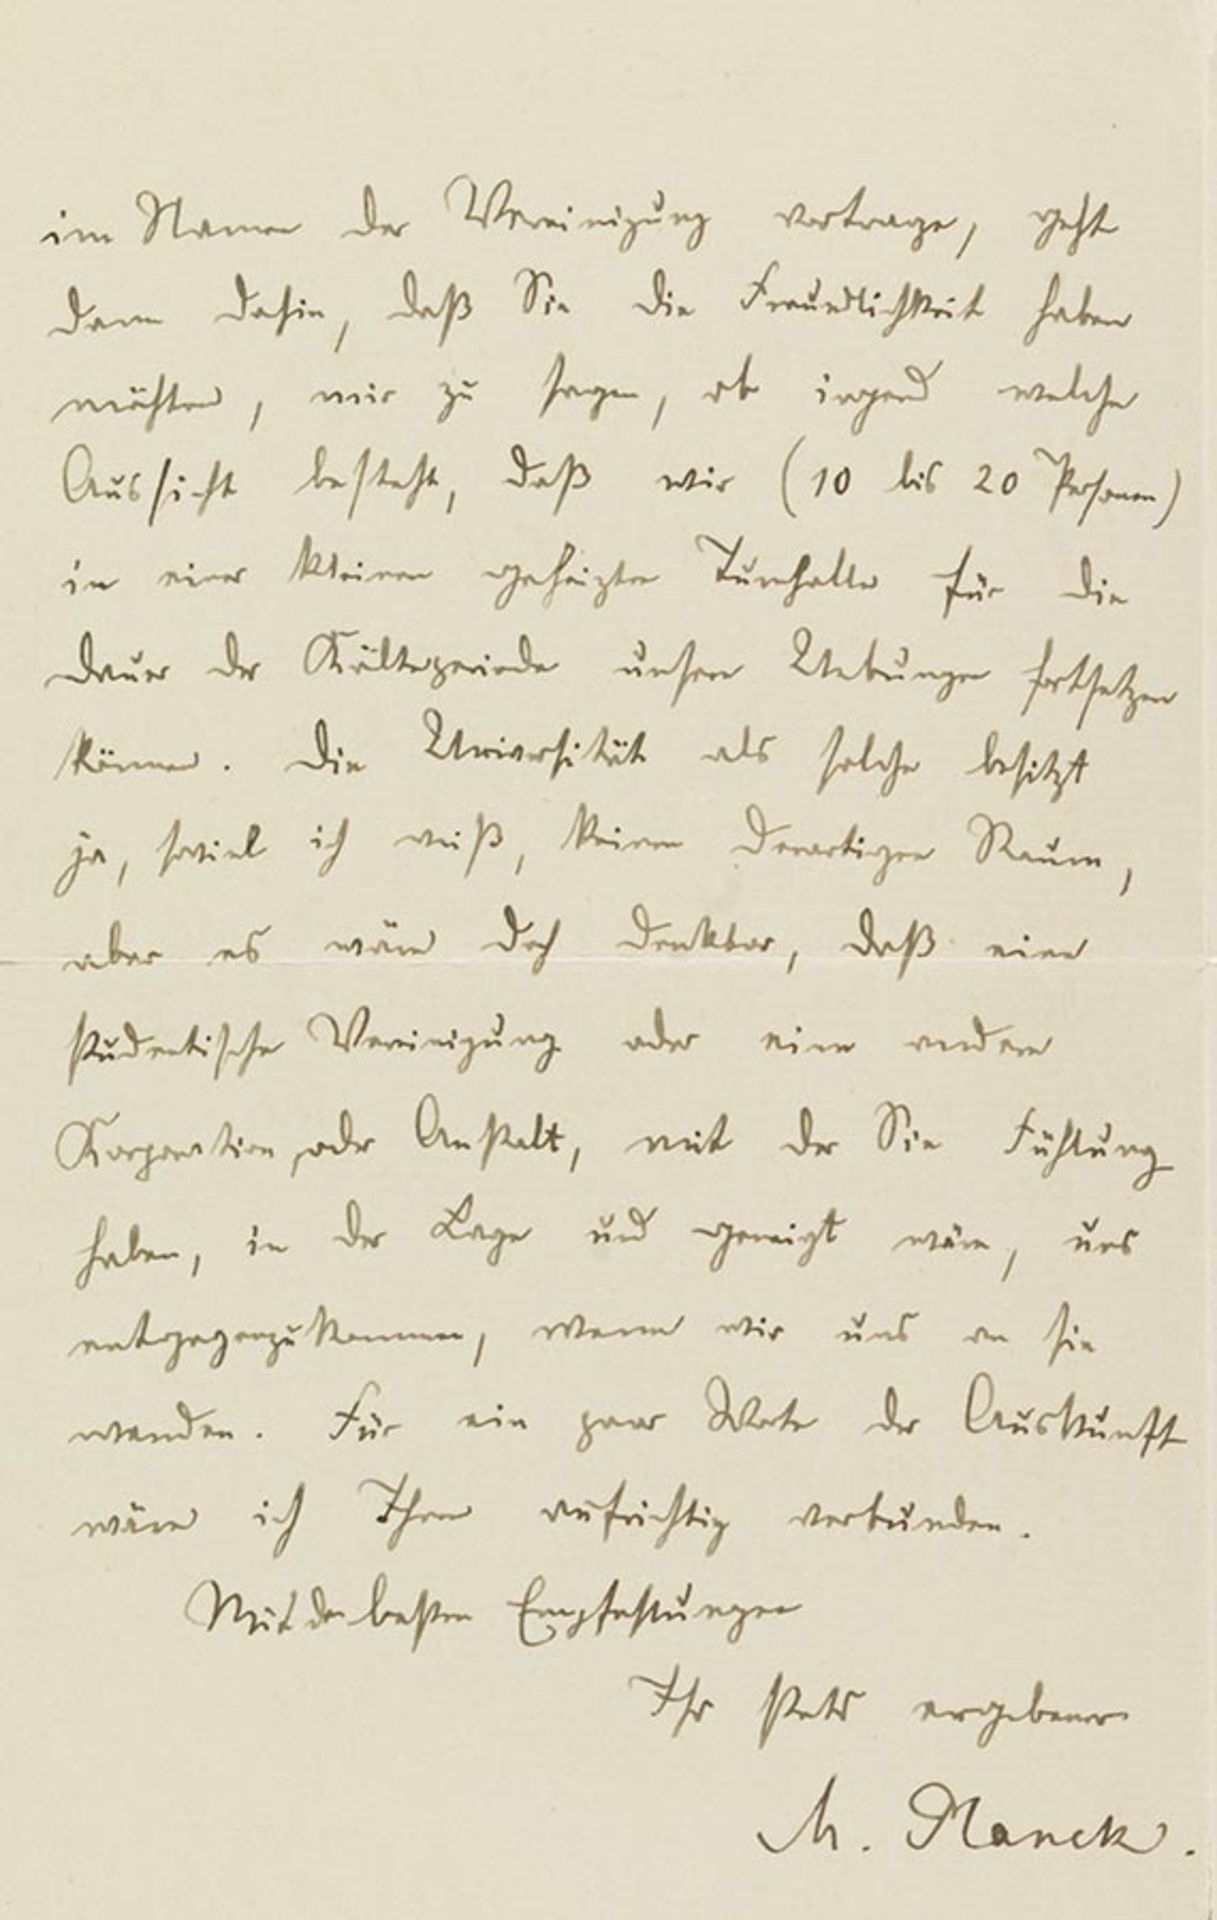 Max Planck, Eigenhändiger Brief mit Unterschrift. Berlin-Grunewald, 13. Oktober 1917.